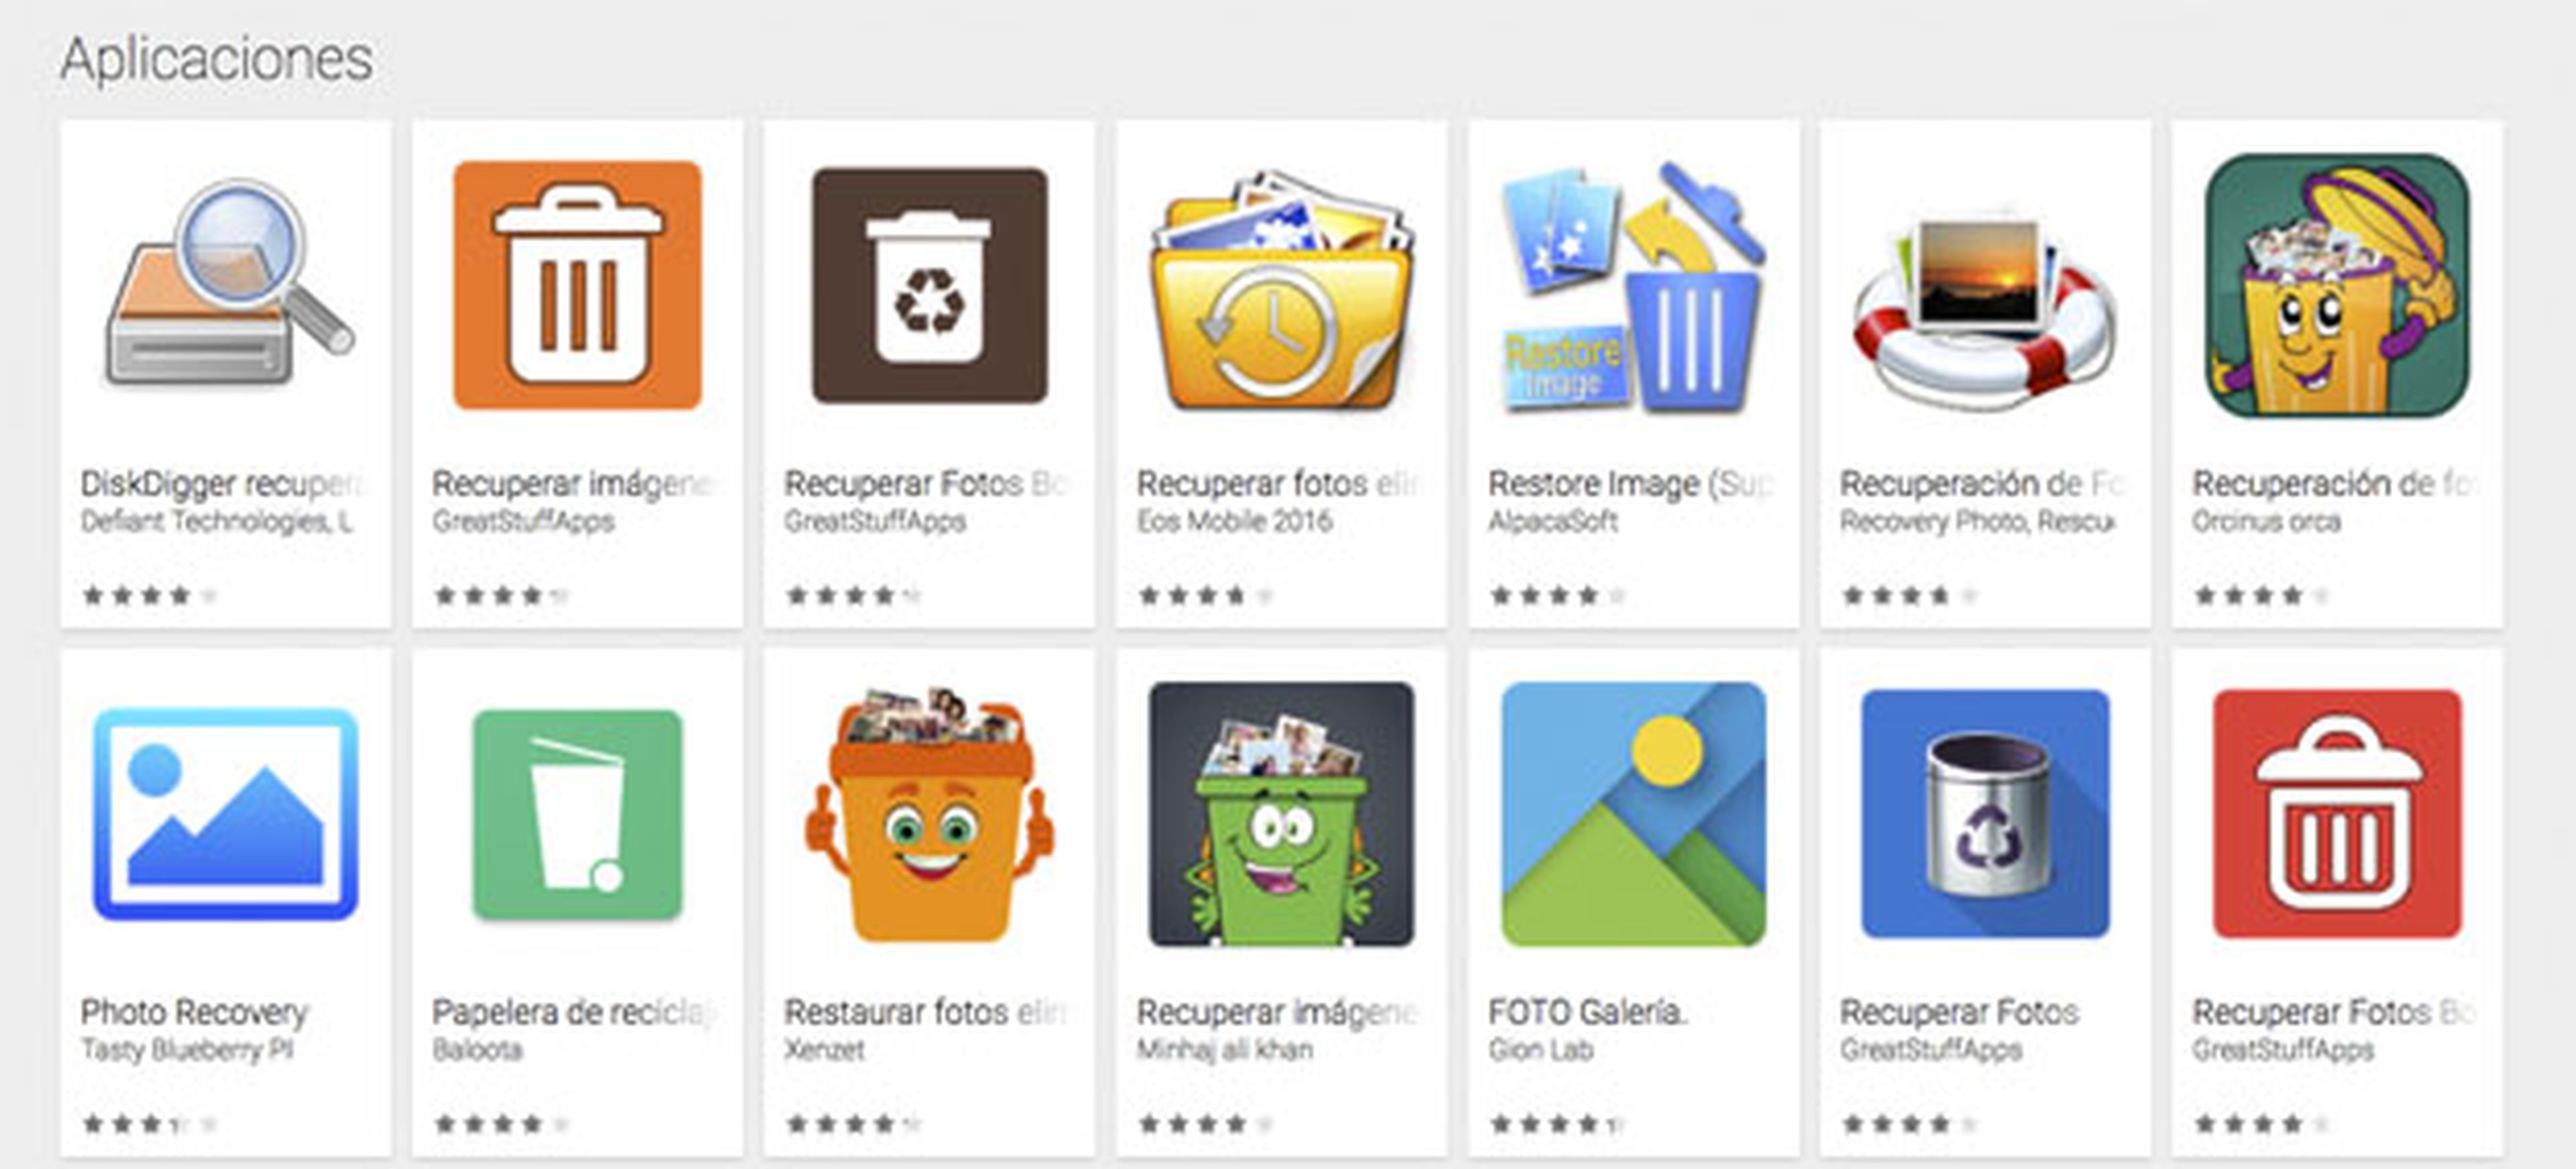 Los resultados que puedes encontrar en las aplicaciones de Google Play